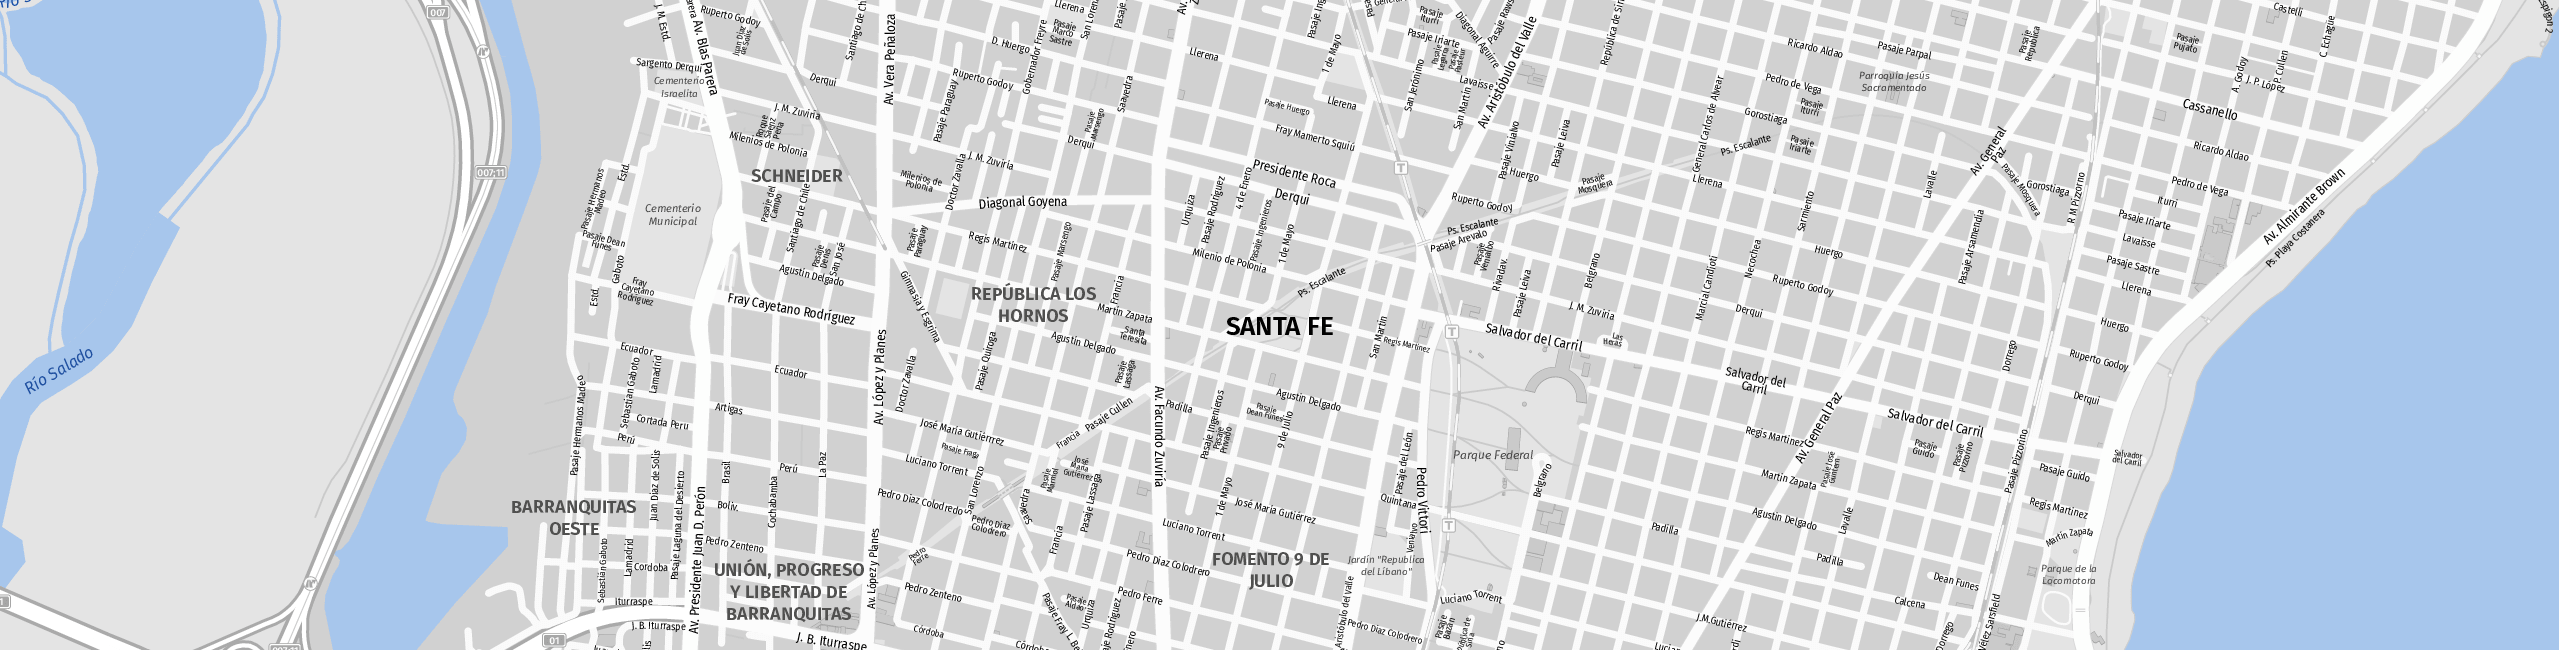 Stadtplan Santa Fe zum Downloaden.